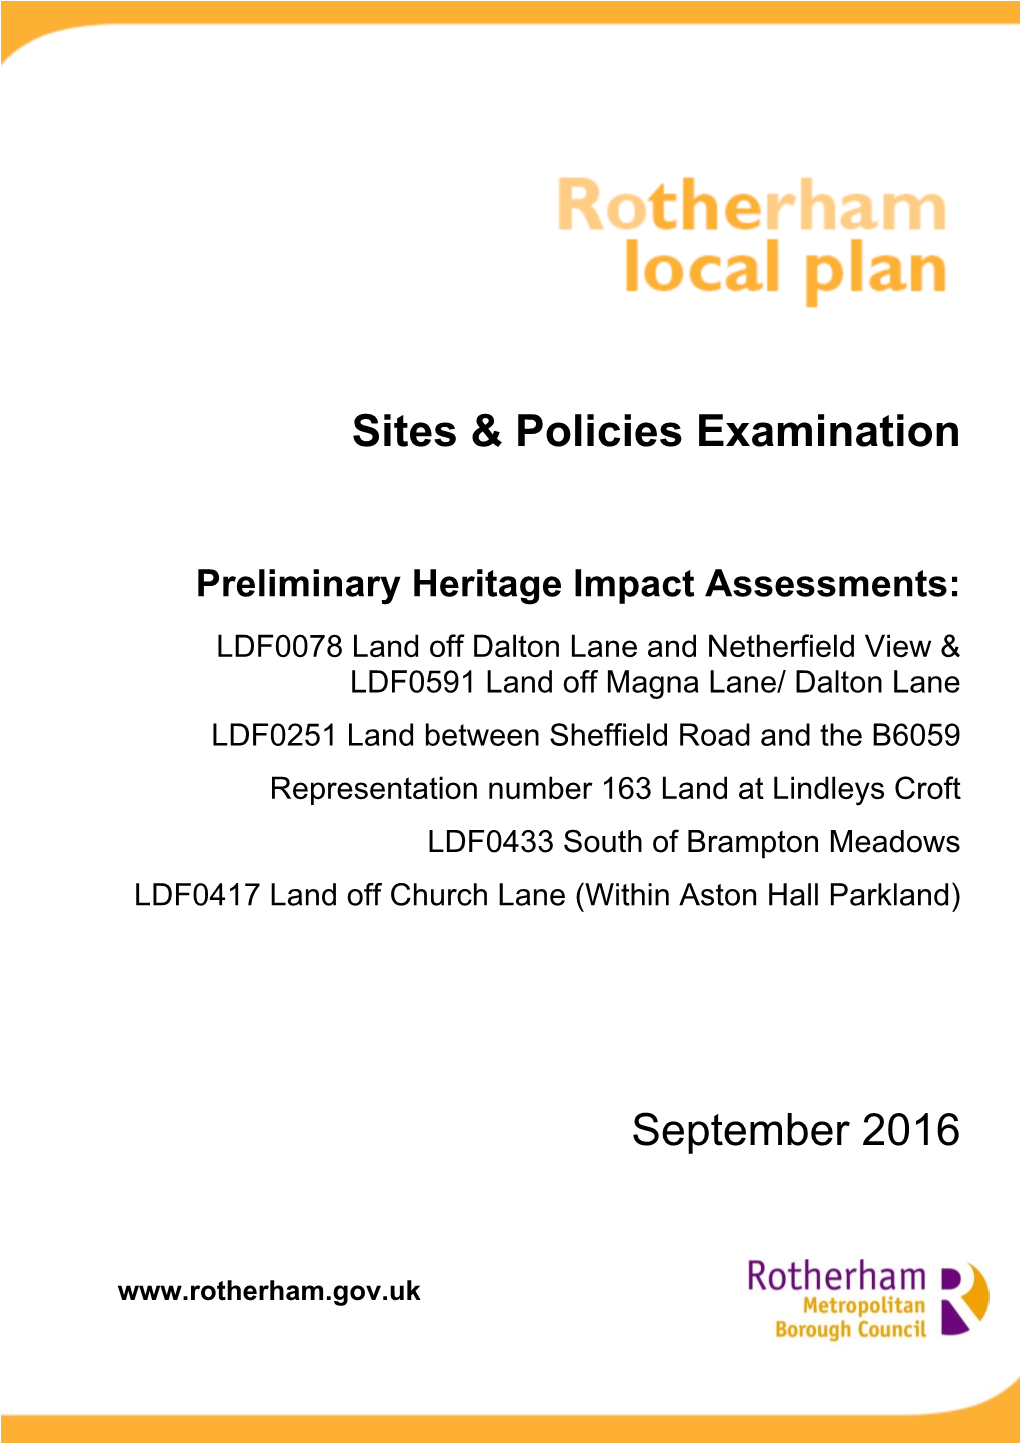 Heritage Impact Assessment September 2016